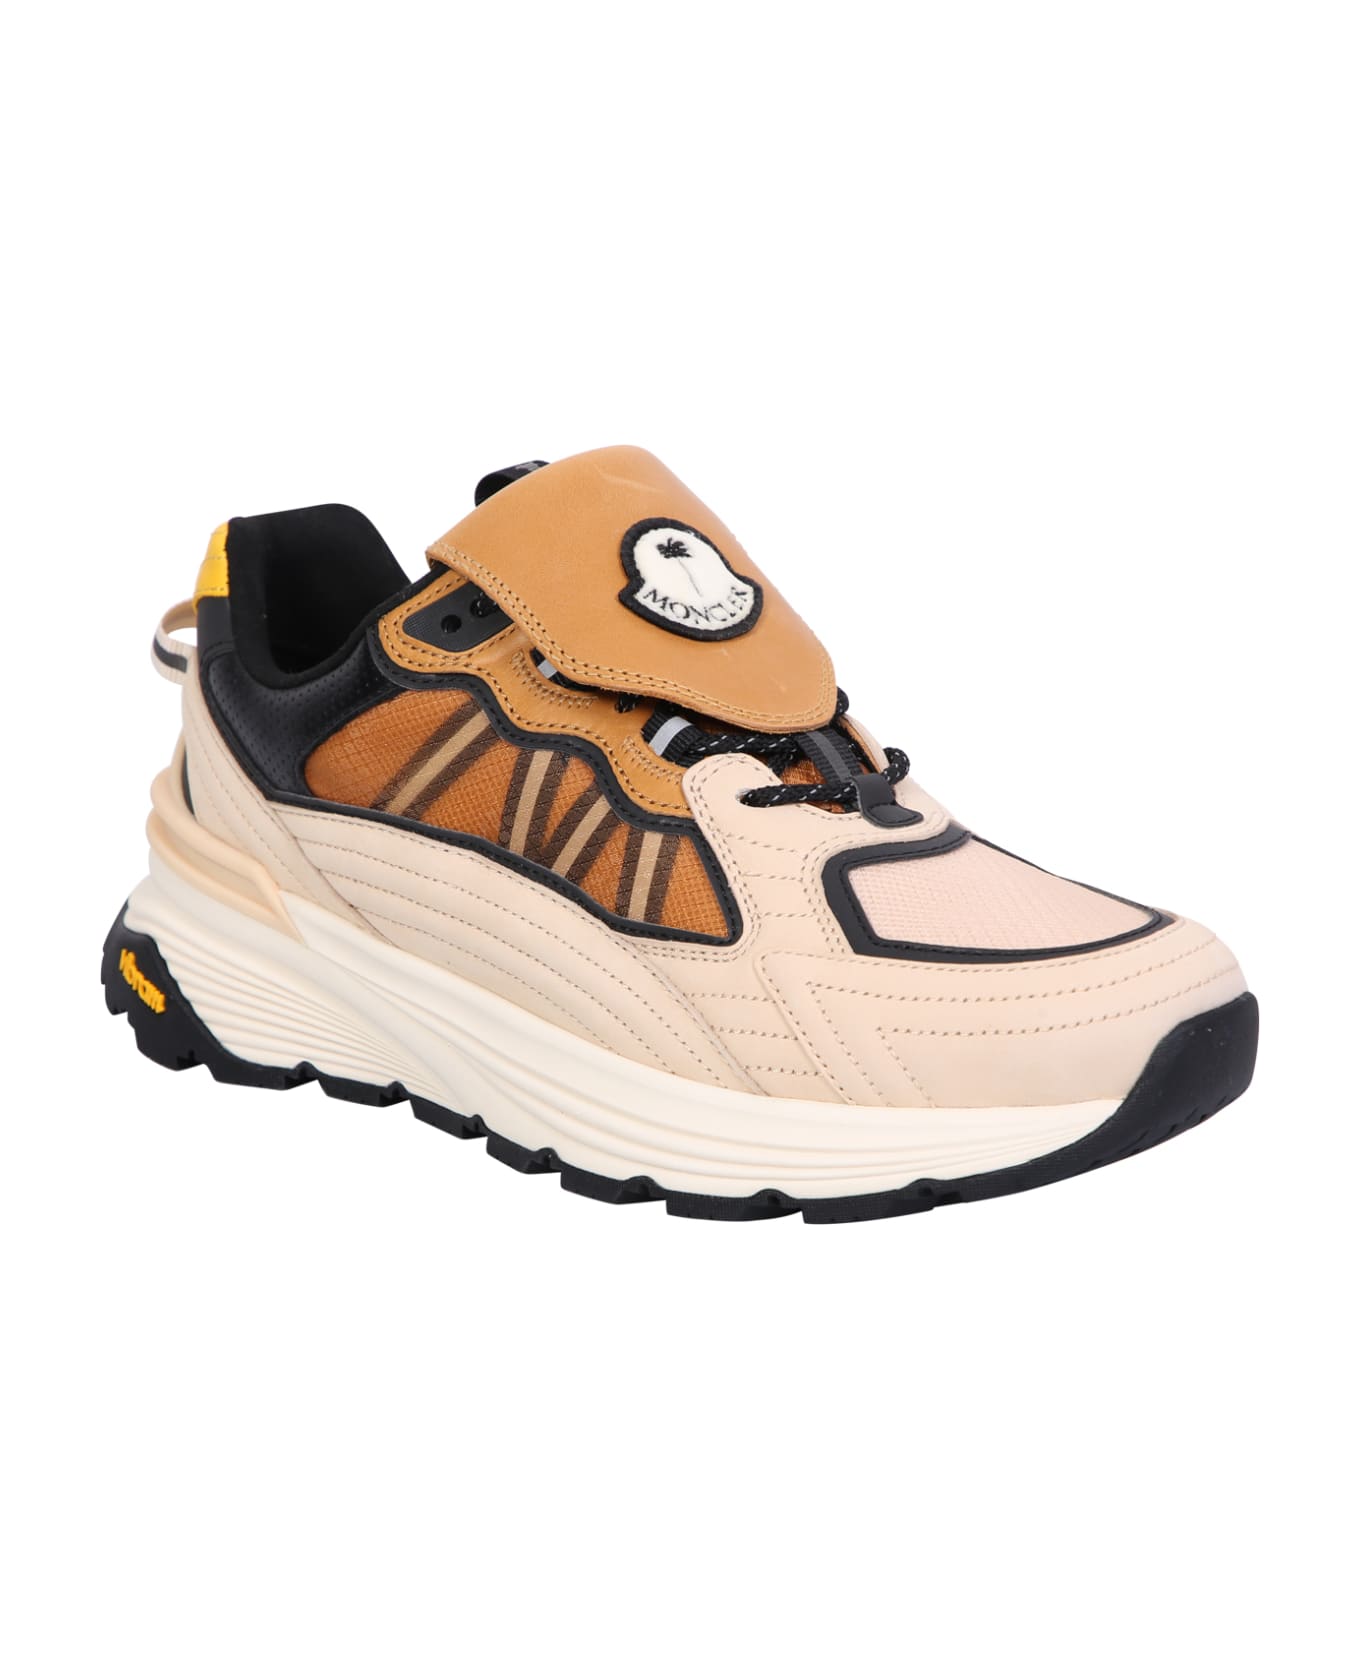 Moncler Genius Palm Lite Runner Sneakers - Beige